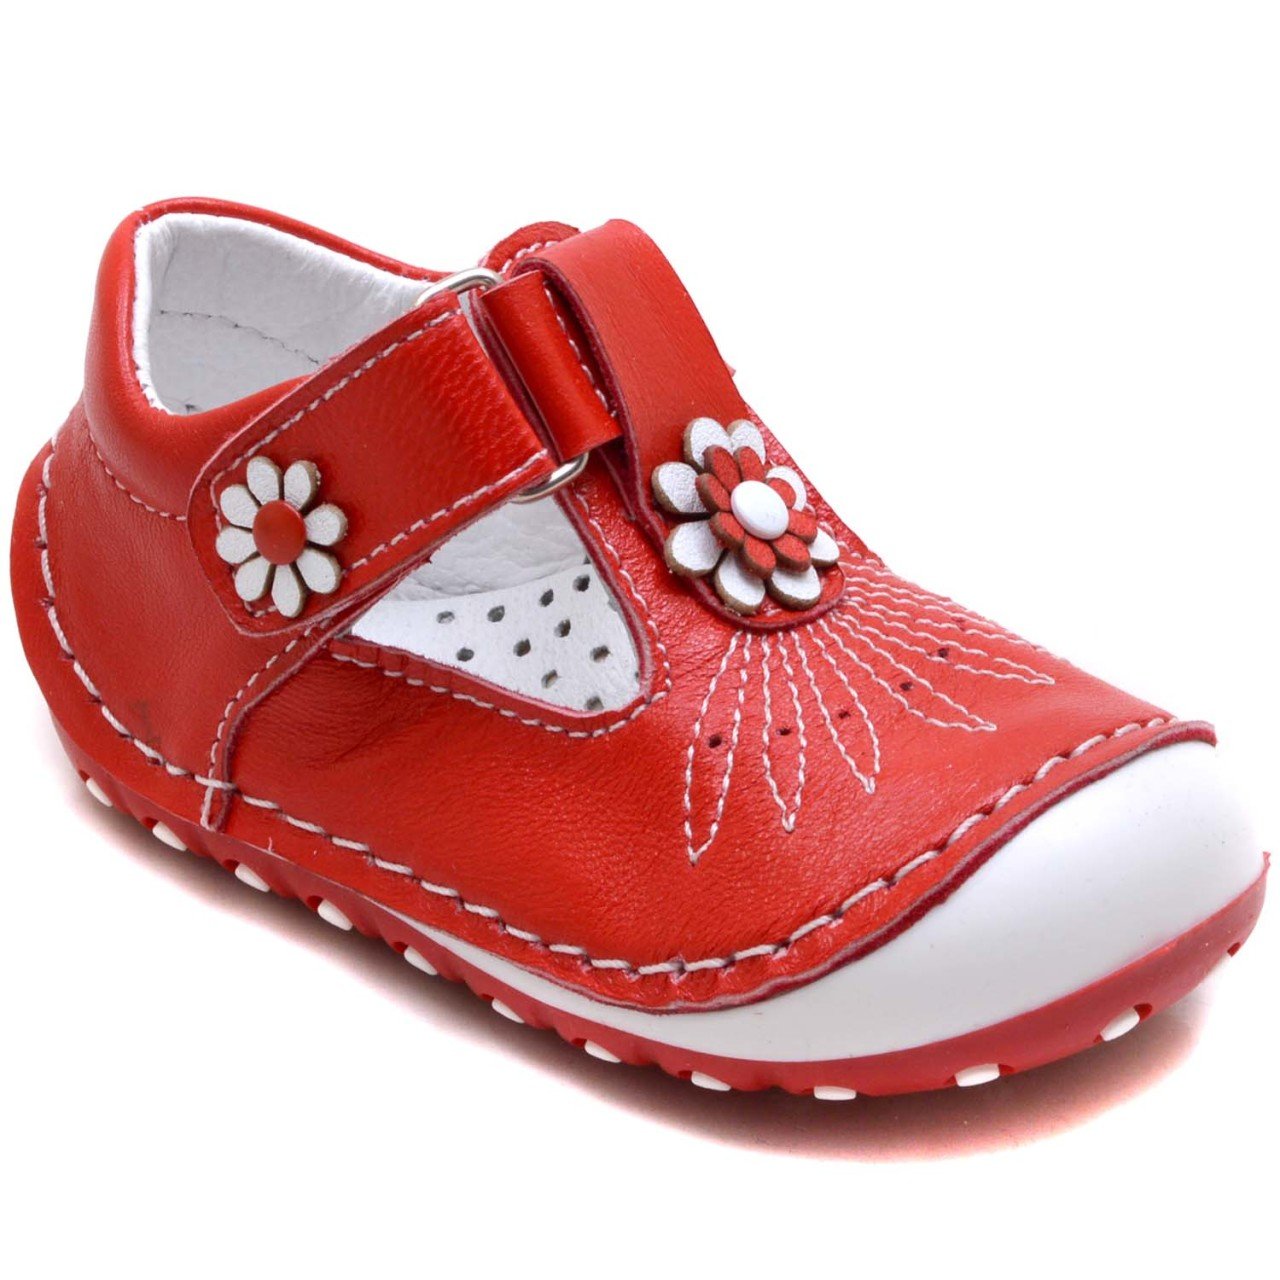 AL-T İlk Adım Çocuk Ayakkabısı - Kırmızı (Deri)